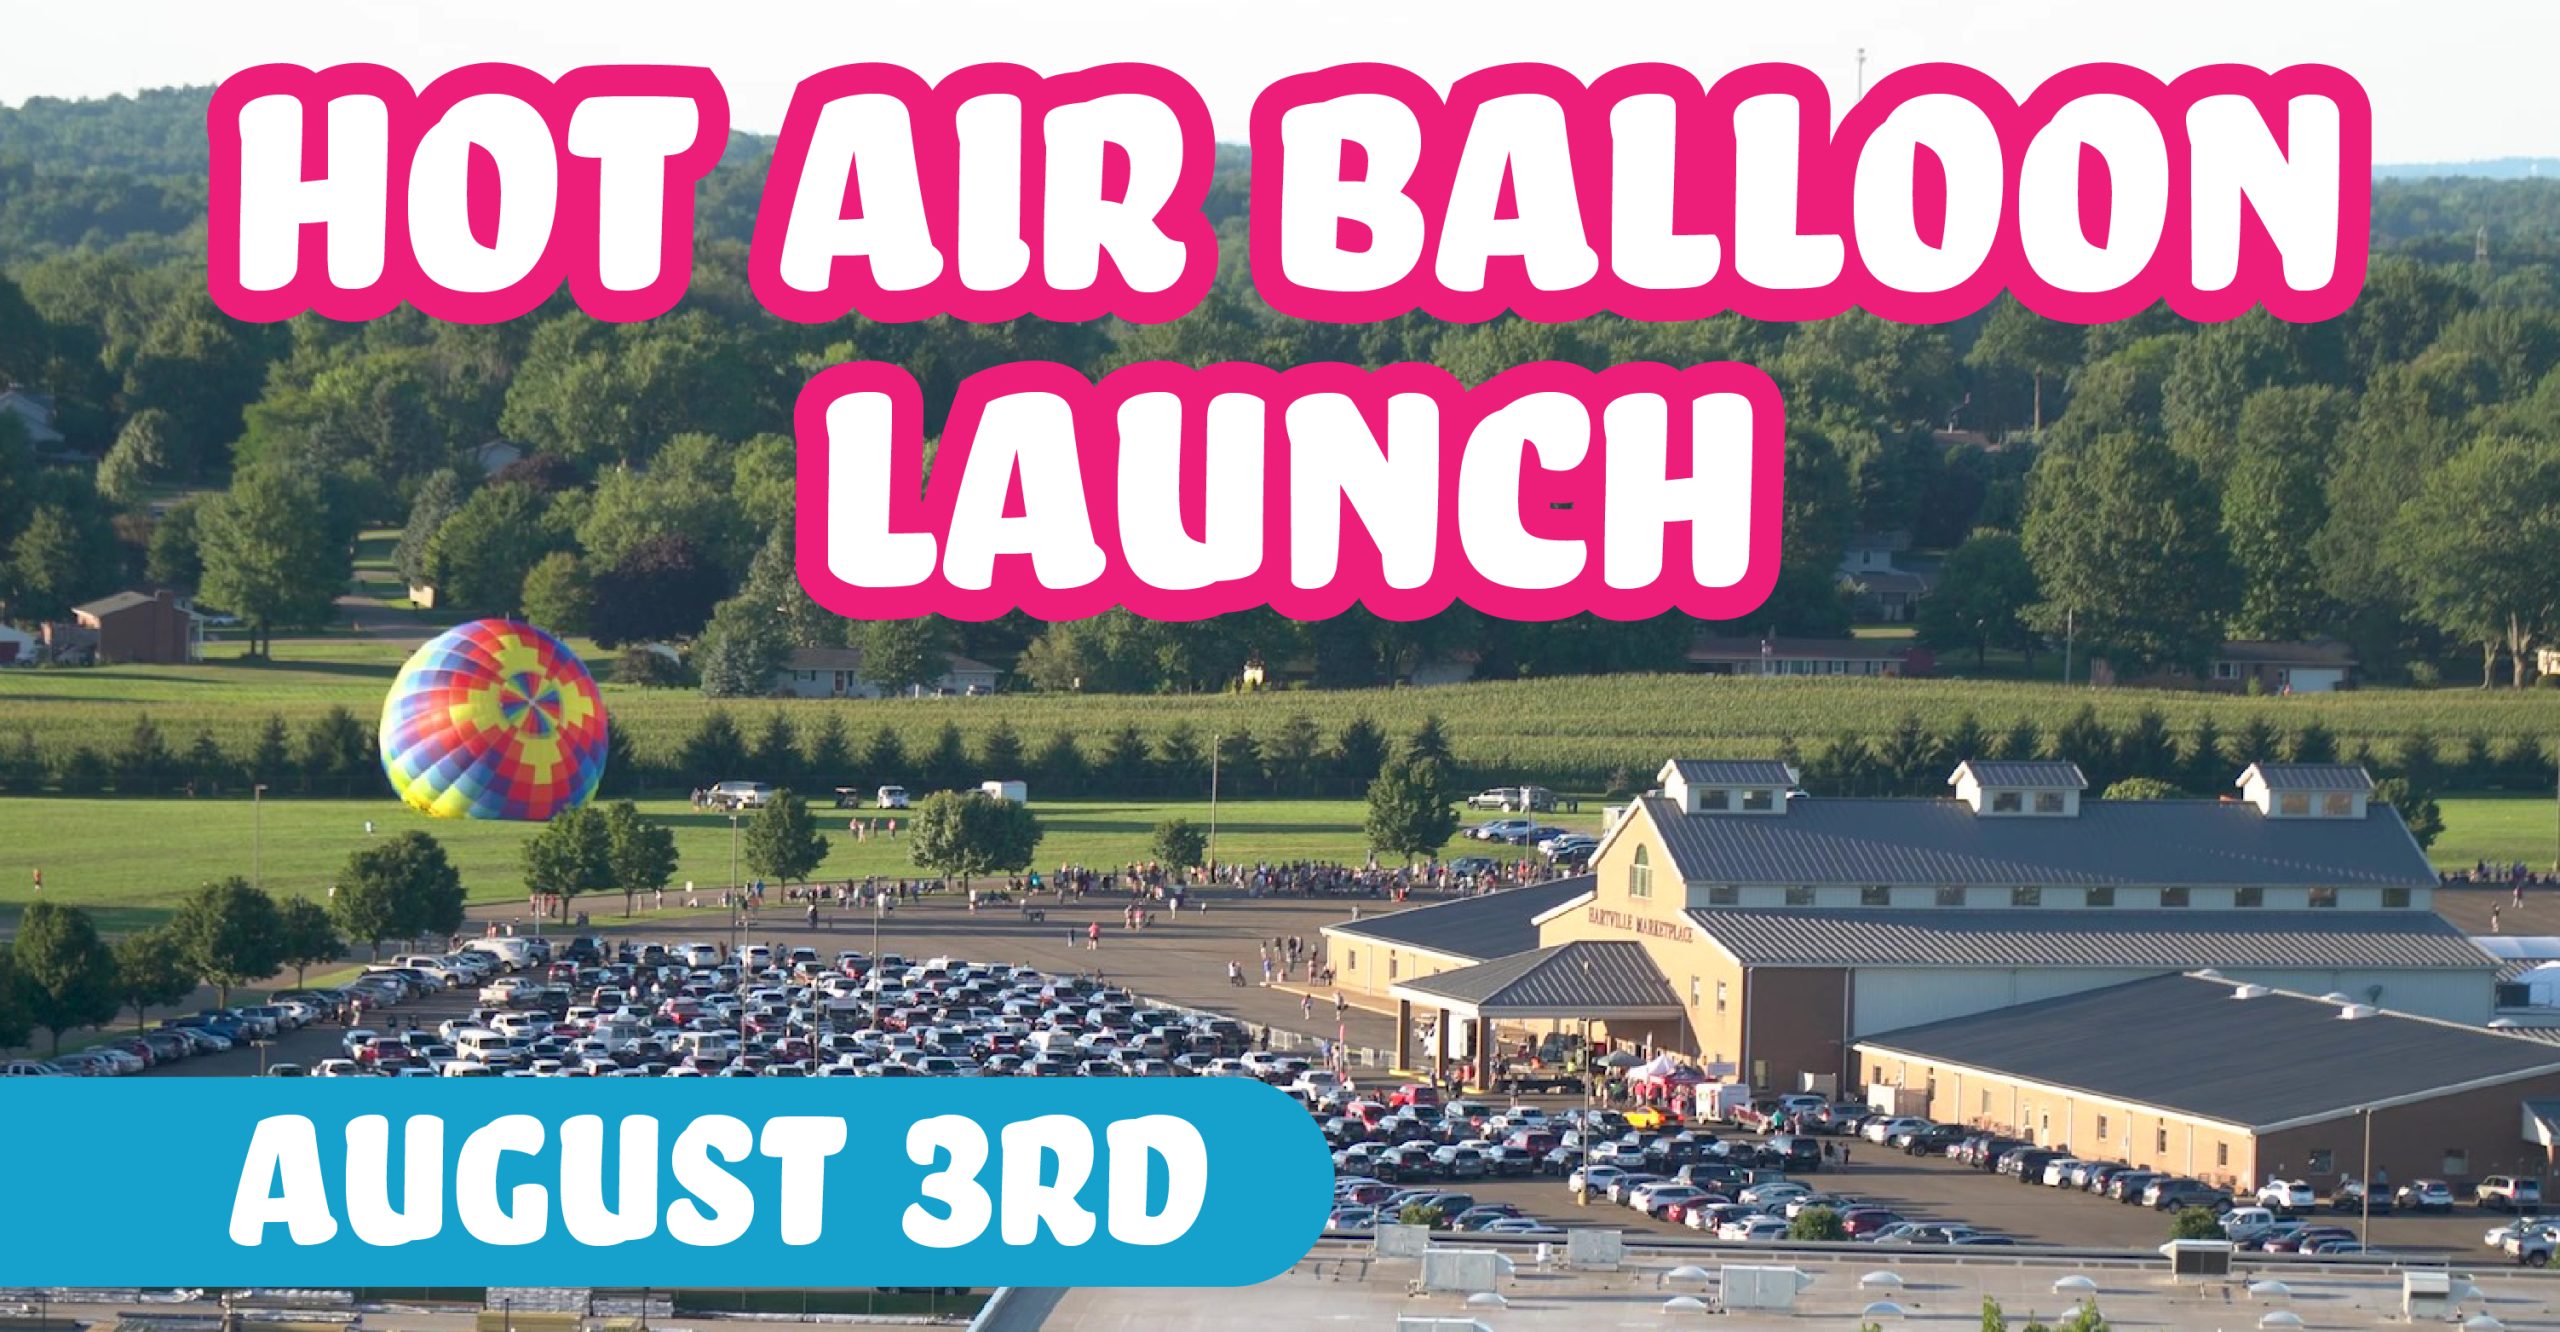 Hot Air Balloon Launch